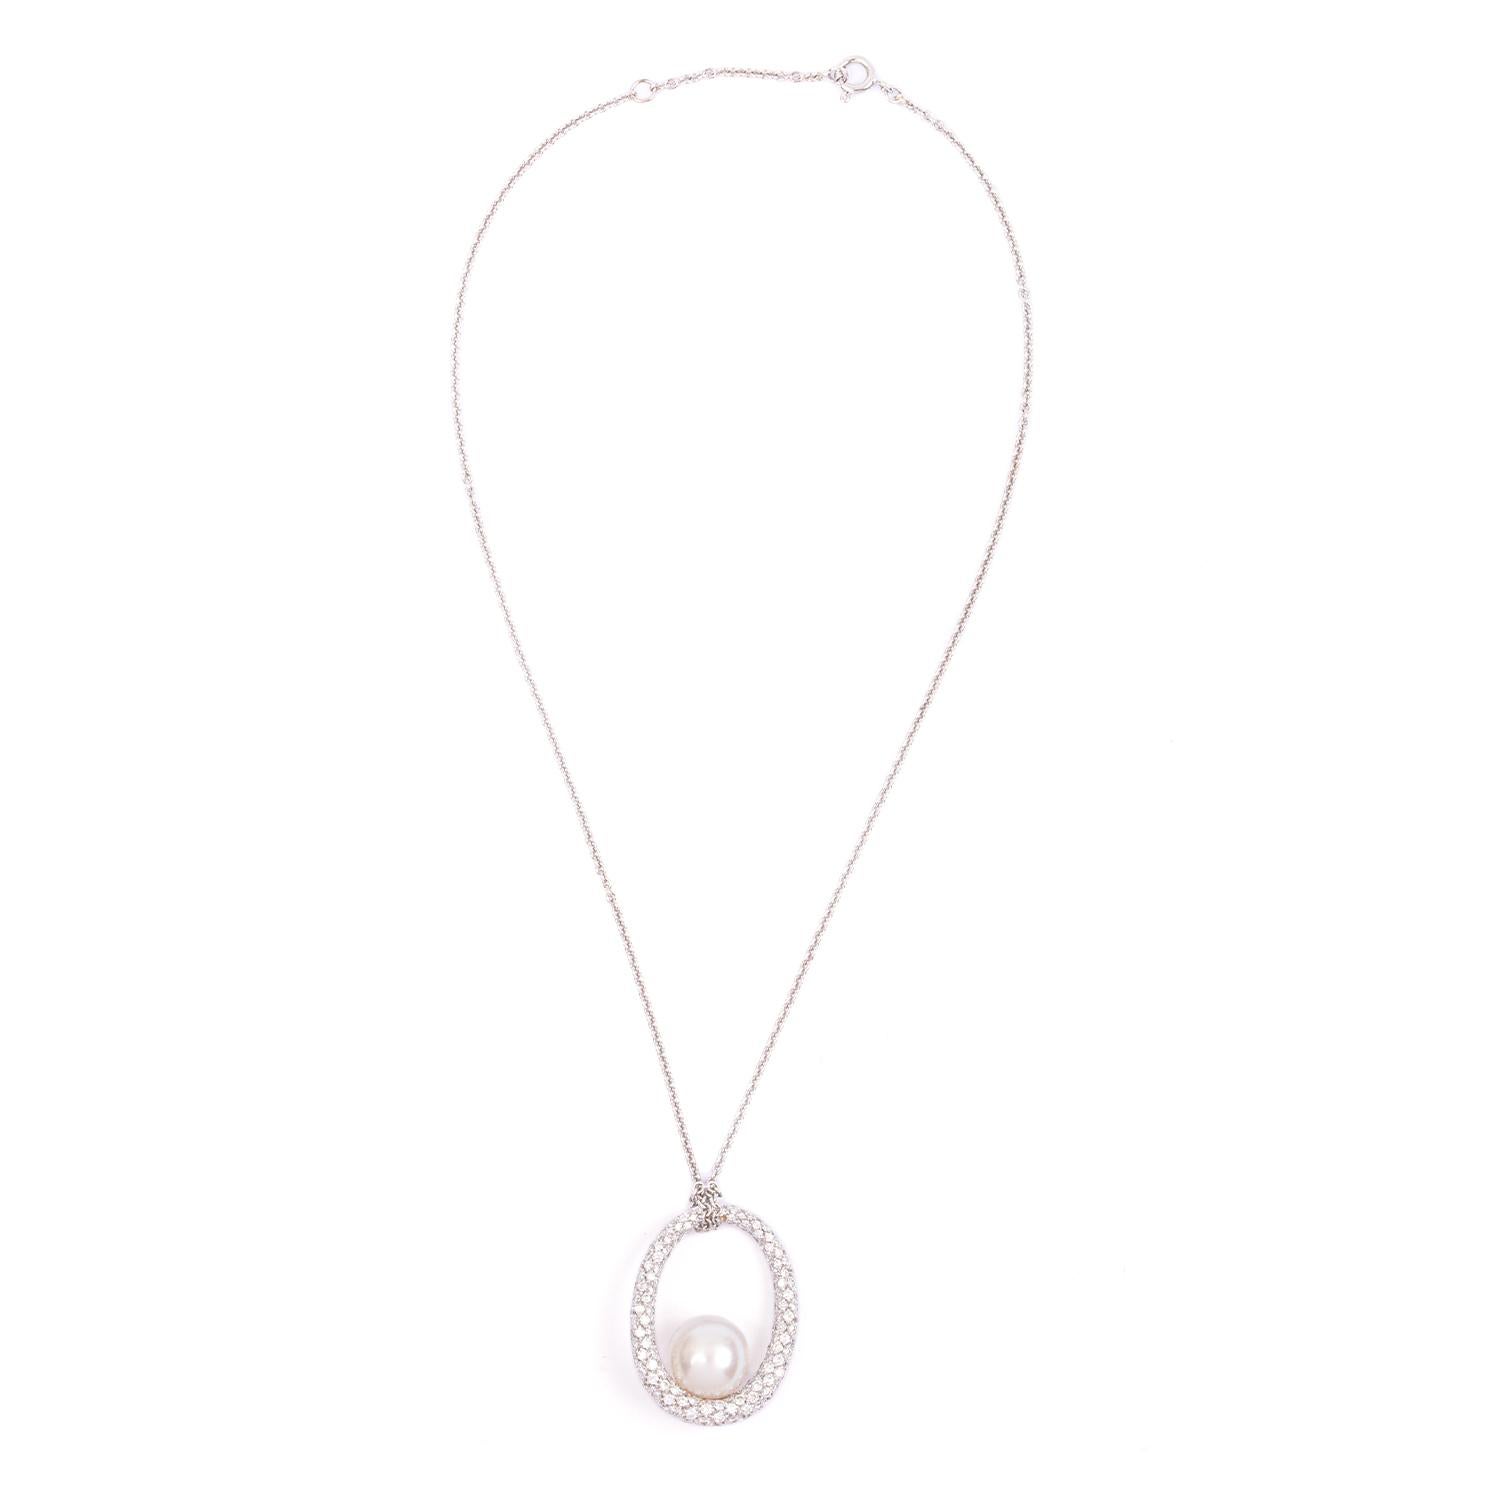 Eine sehr elegante  Compagnia delle Perle Halskette aus Weißgold mit japanischer Perle und Diamanten, Perlendurchmesser 11/12 und 1,14 Karat weiße Diamanten.
Länge der Kette 40 cm, Breite des Anhängers 2,5 cm Länge 3,3

 16 gr


